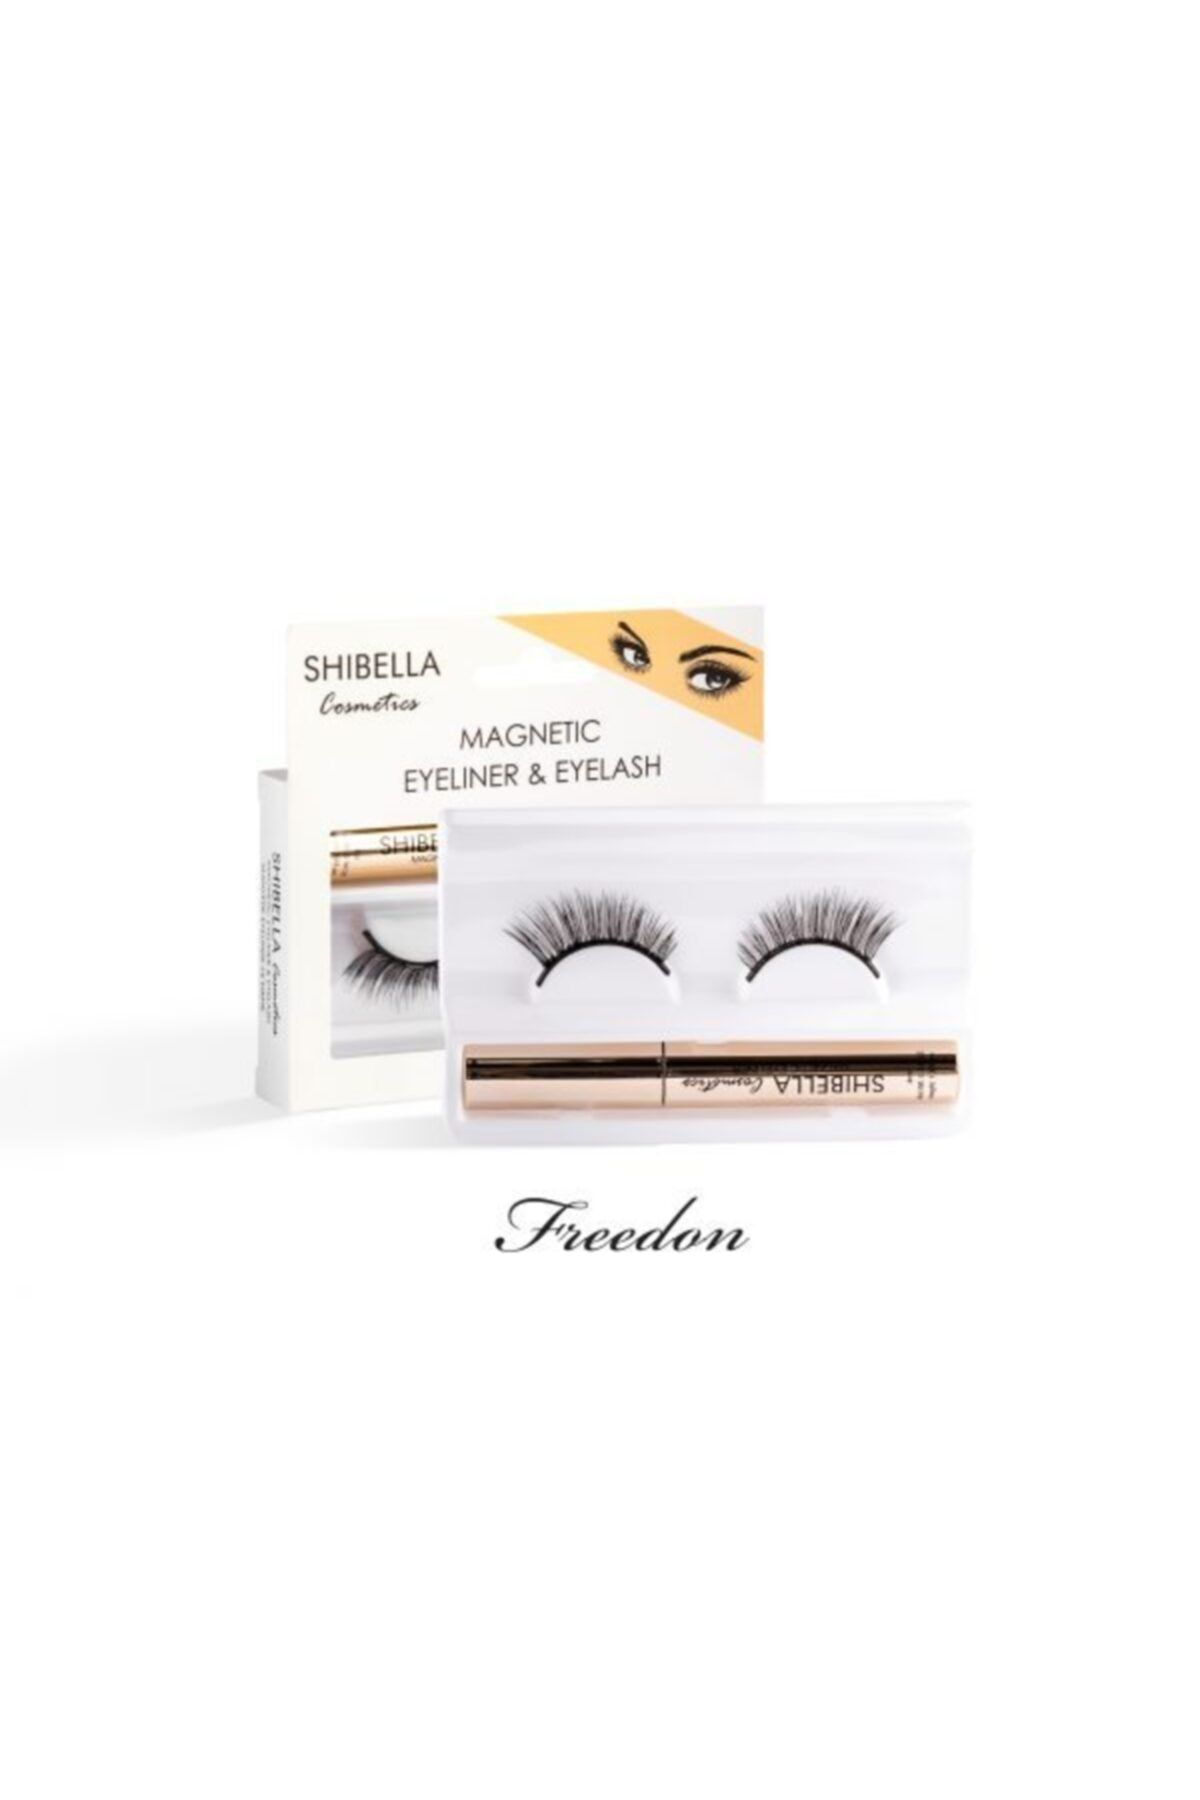 Shibella Cosmetics Manyetik Eyeliner Ve Manyetik Takma Kirpik Must Have Serisi- Freedom